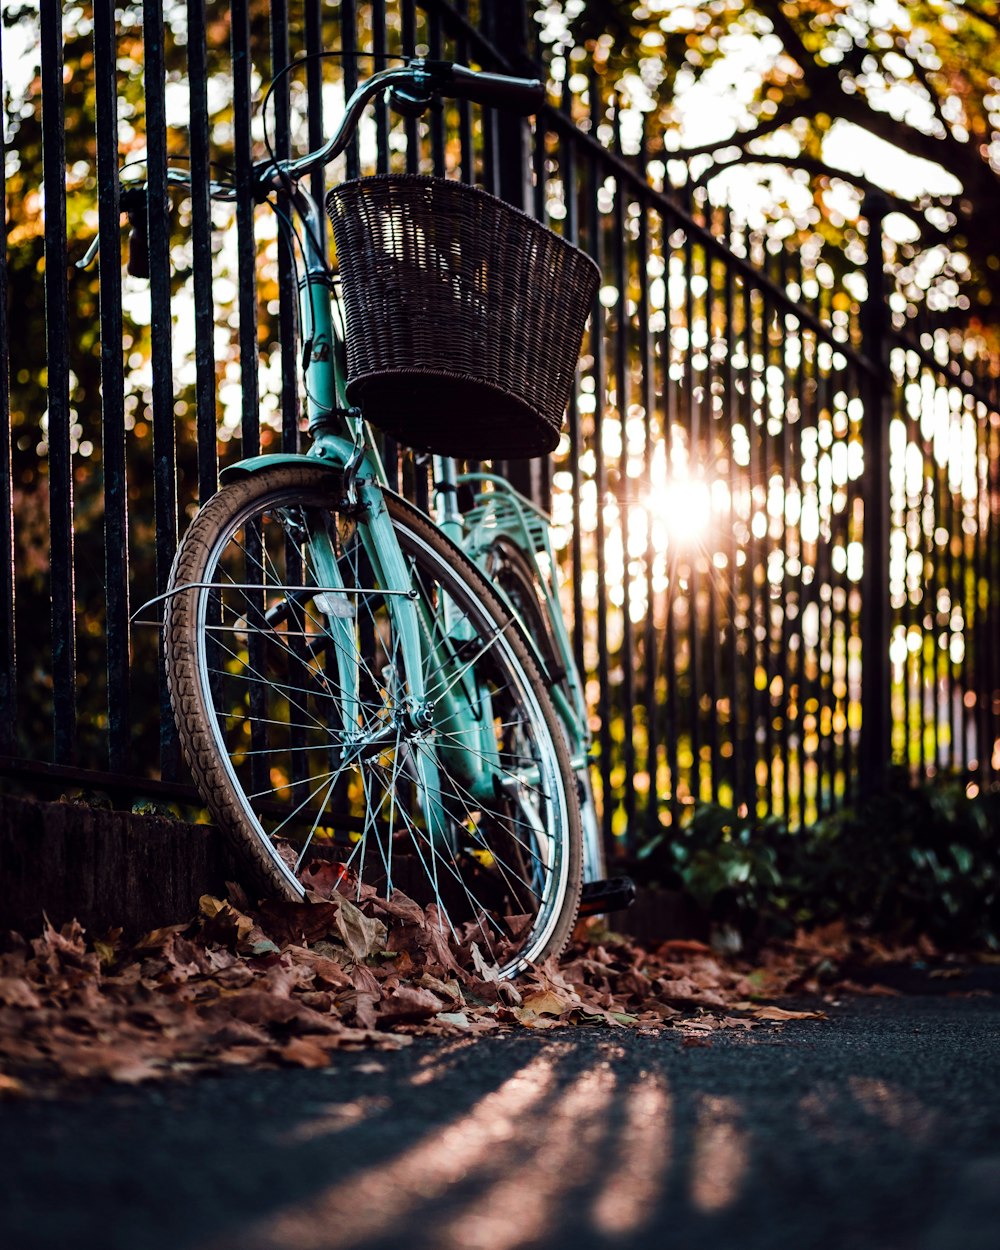 vélo blanc et marron s’appuyant sur une clôture en métal noir